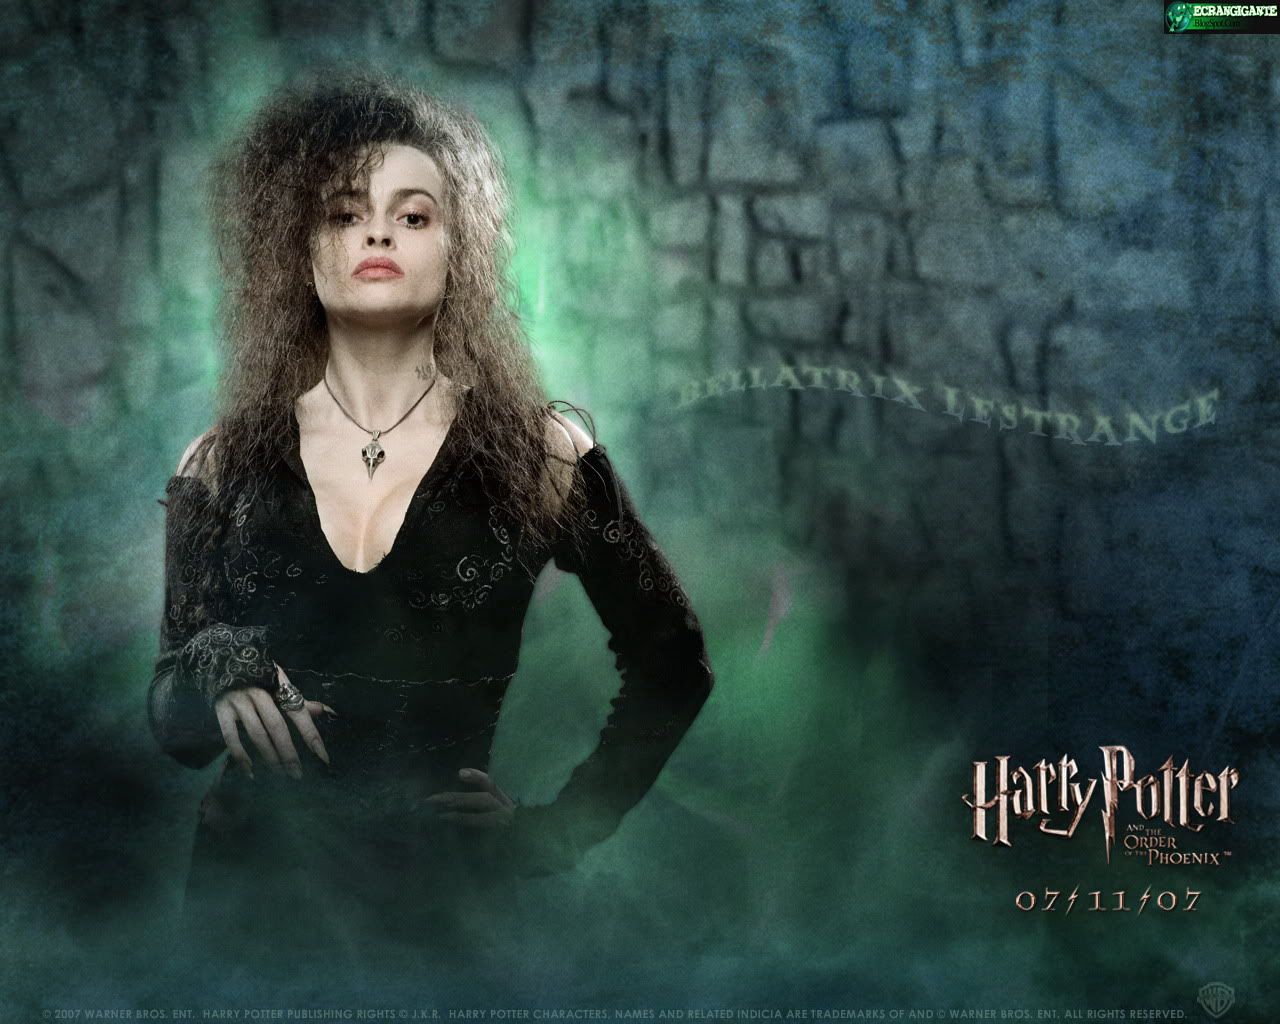 EcranGigante - Posters, Wallpapers & Trailers de Filmes.: Harry Potter e a Ordem da ...1280 x 1024